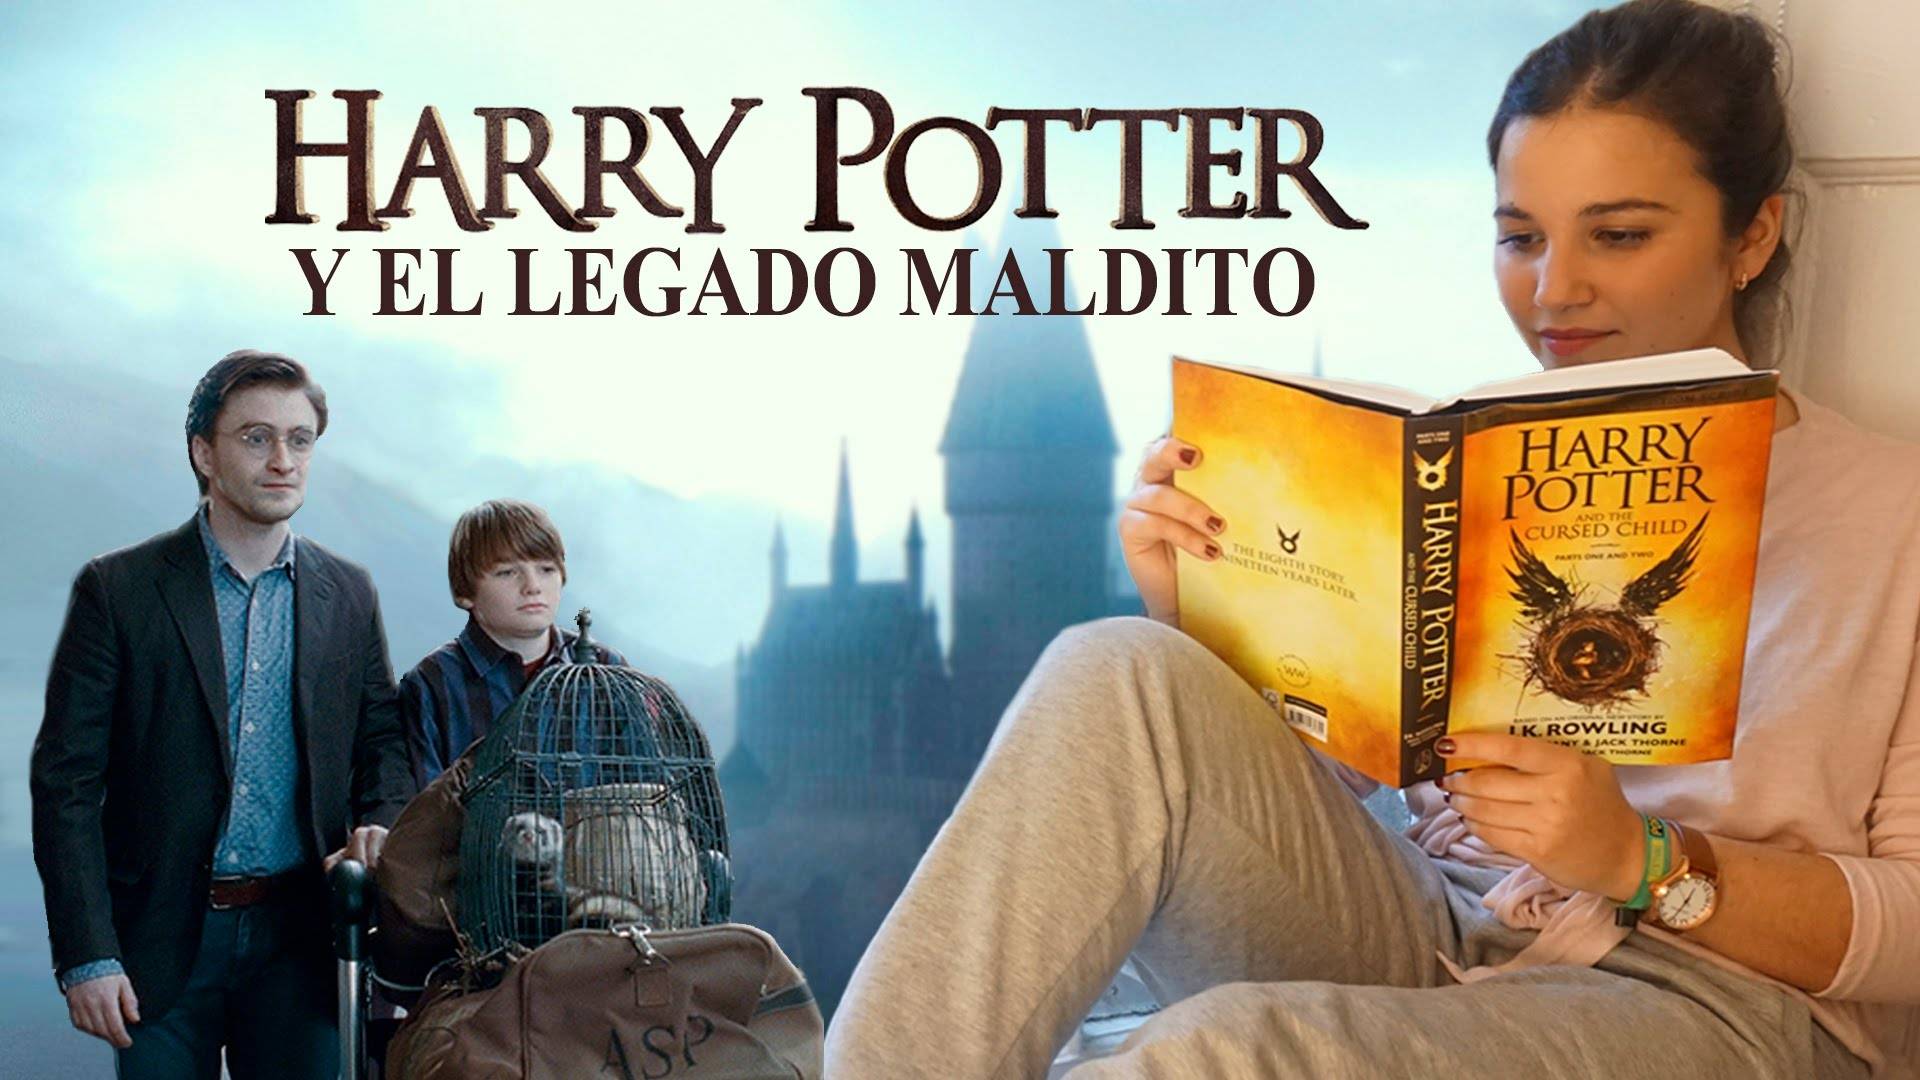 Harry Potter, en su versión “cuarentona” y teatral, llega en español